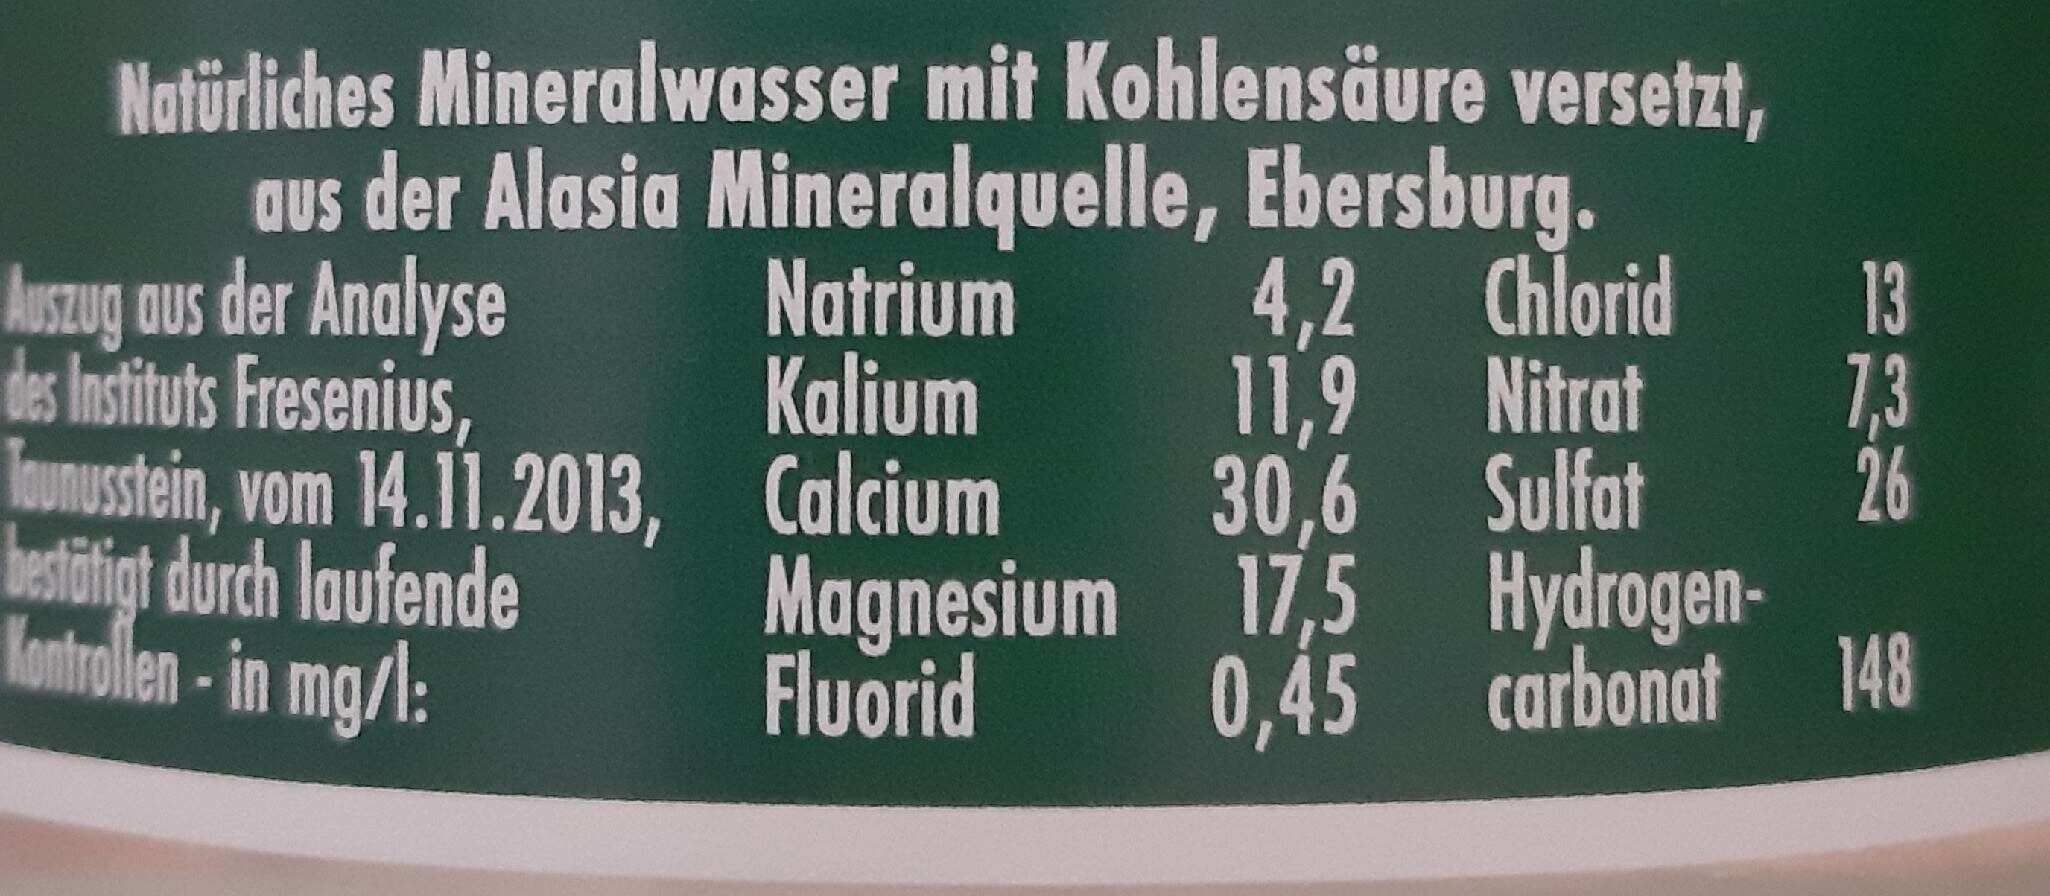 Mineralwasser Medium - Nährwertangaben